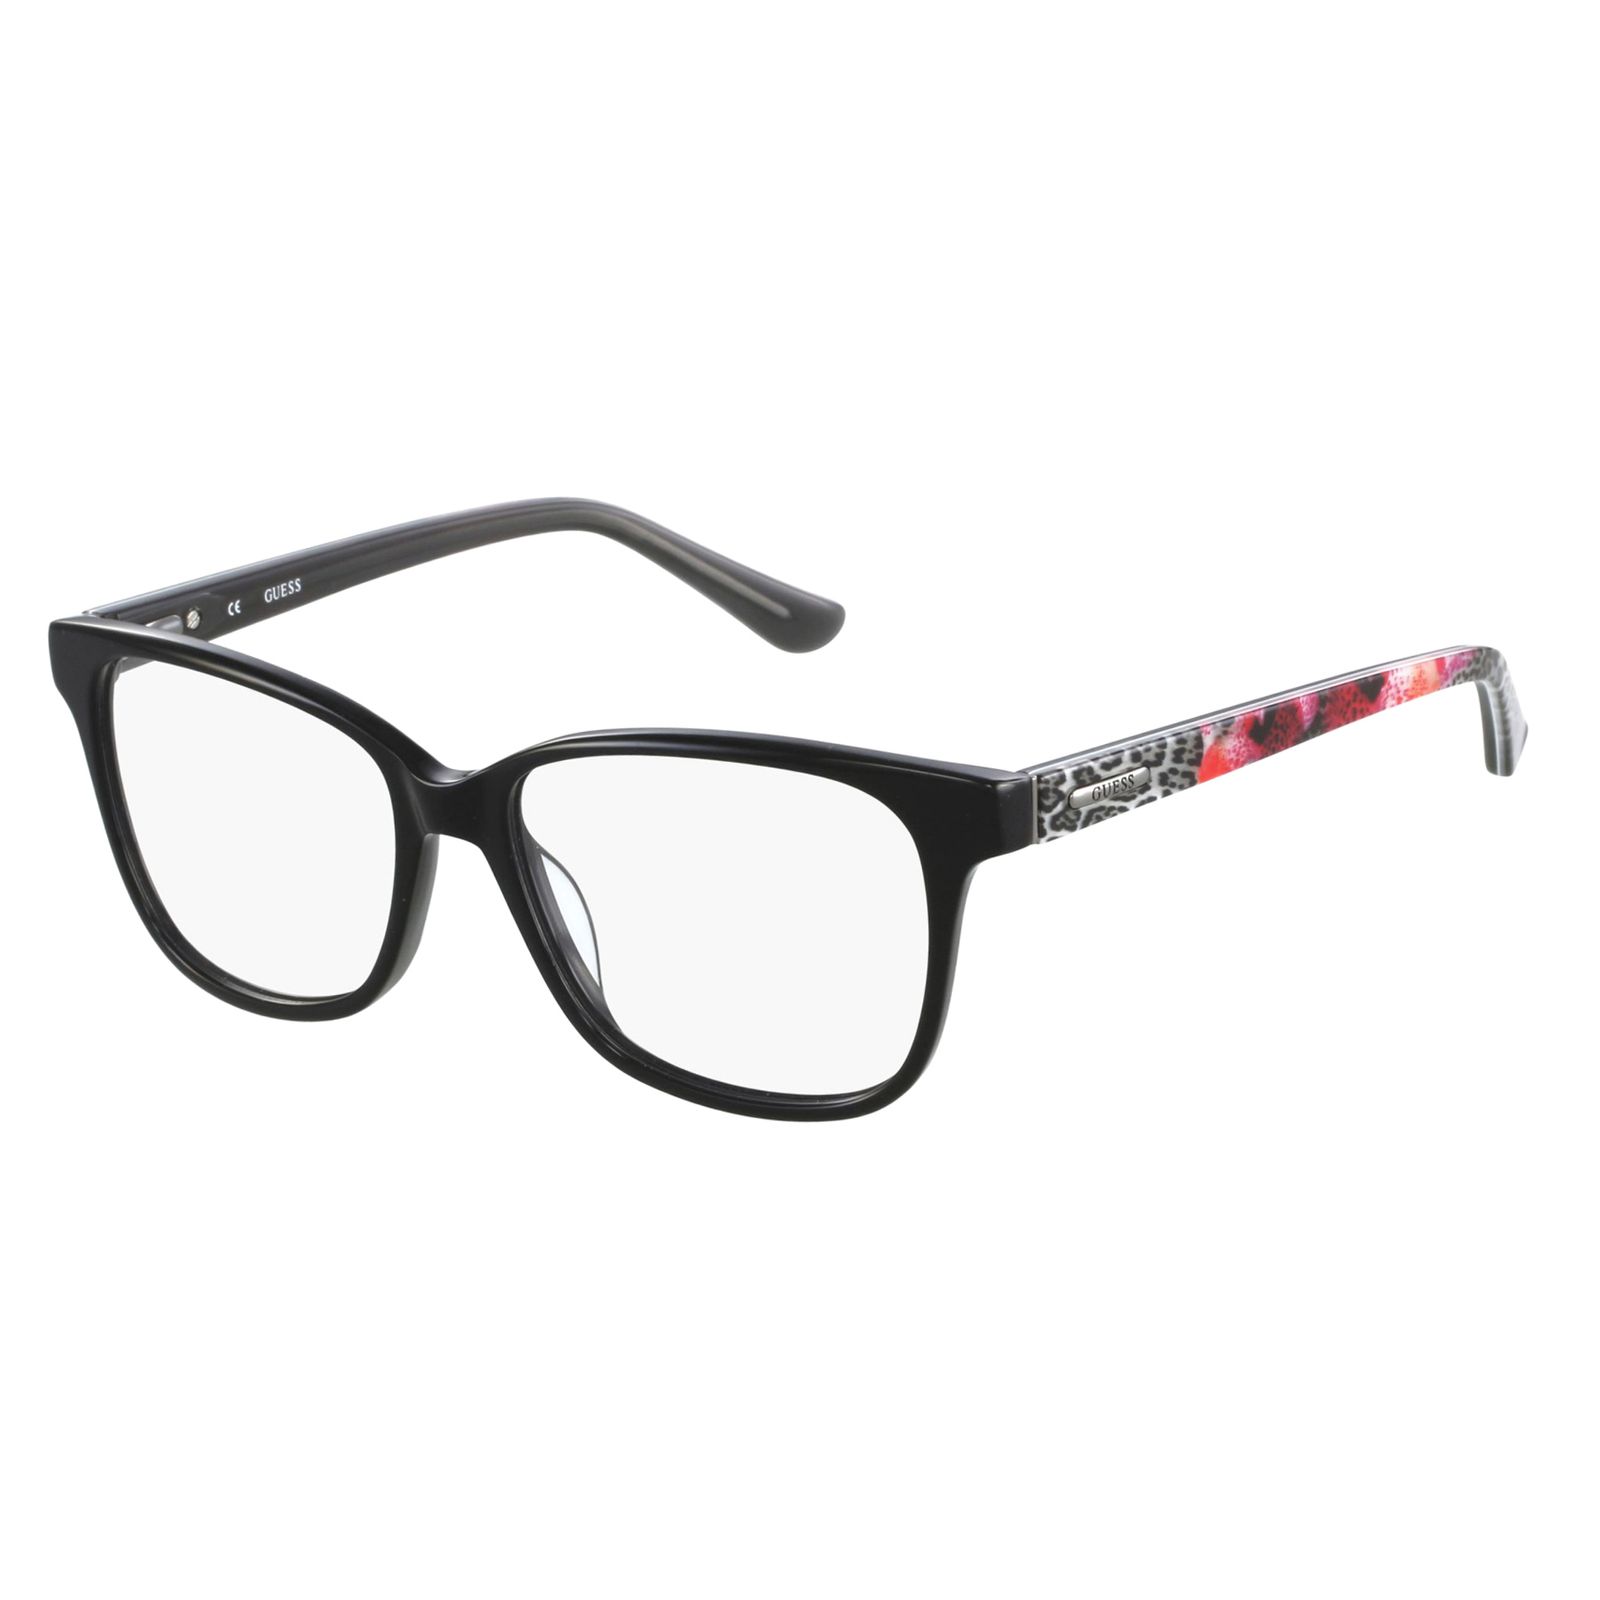 فریم عینک طبی زنانه گس مدل GU2506001 -  - 1